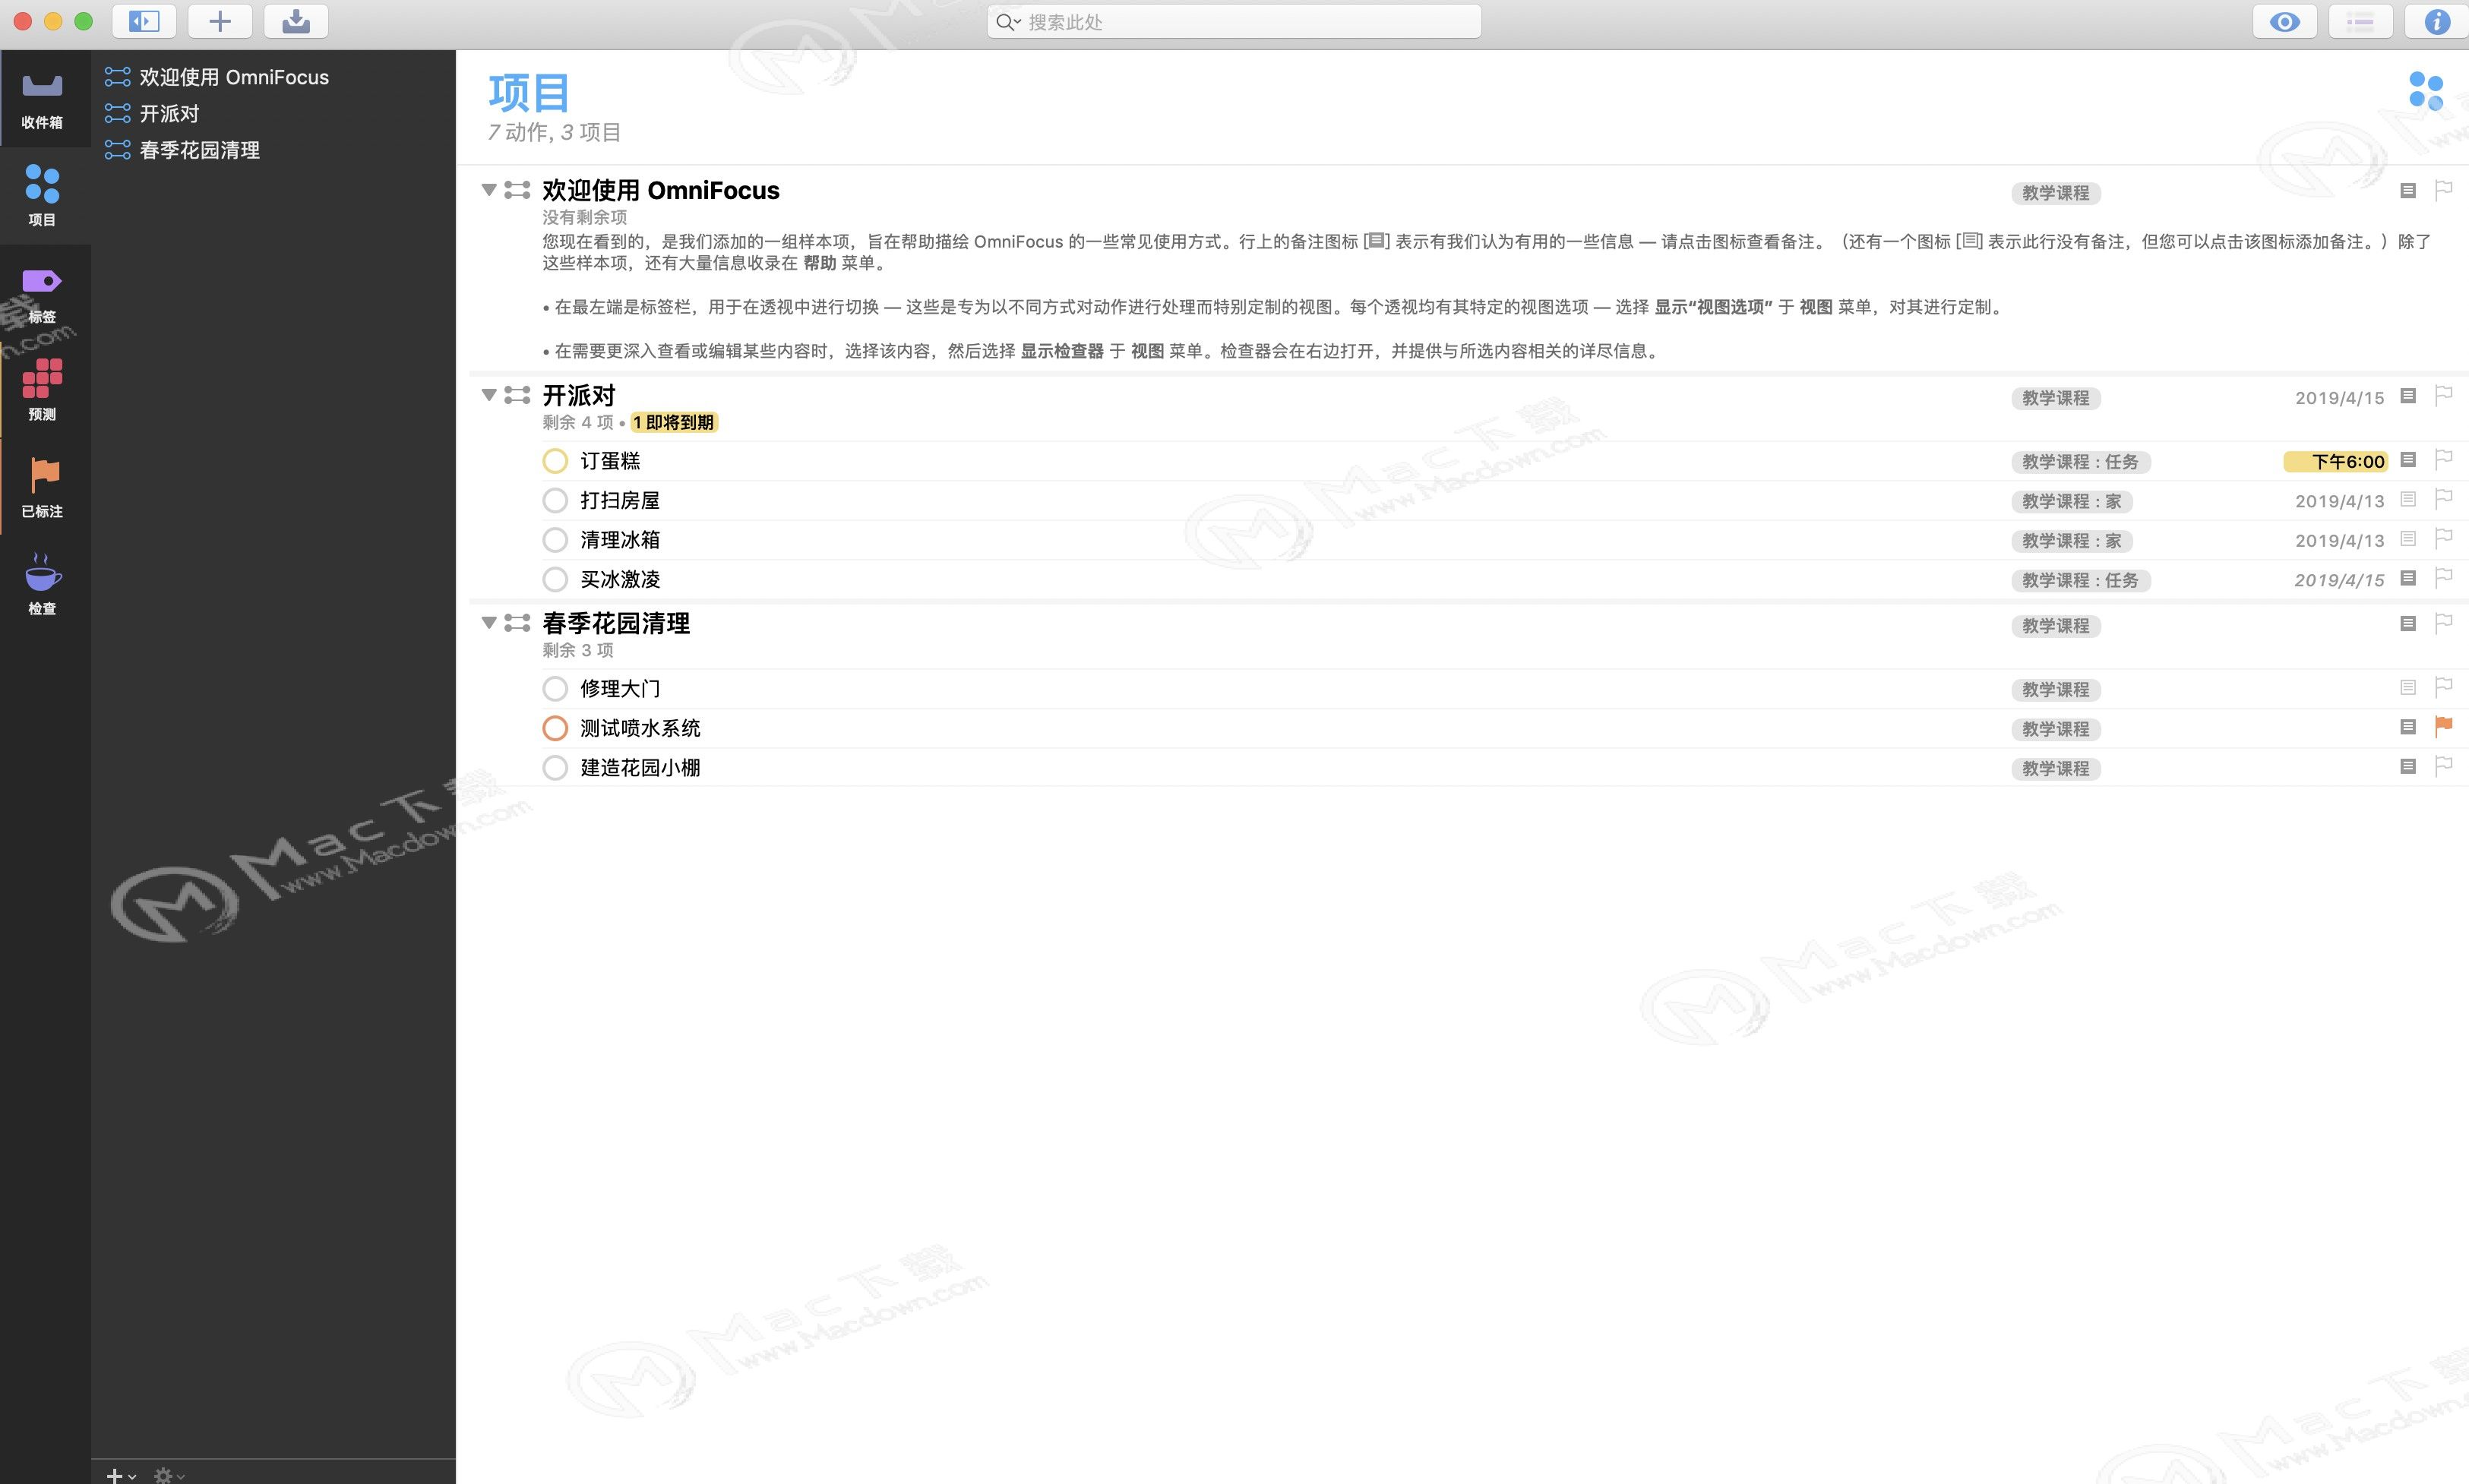 OmniFocus Pro 3  Mac破解版-OmniFocus Pro 3 for Mac(最强GTD时间管理工具)- Mac下载插图18